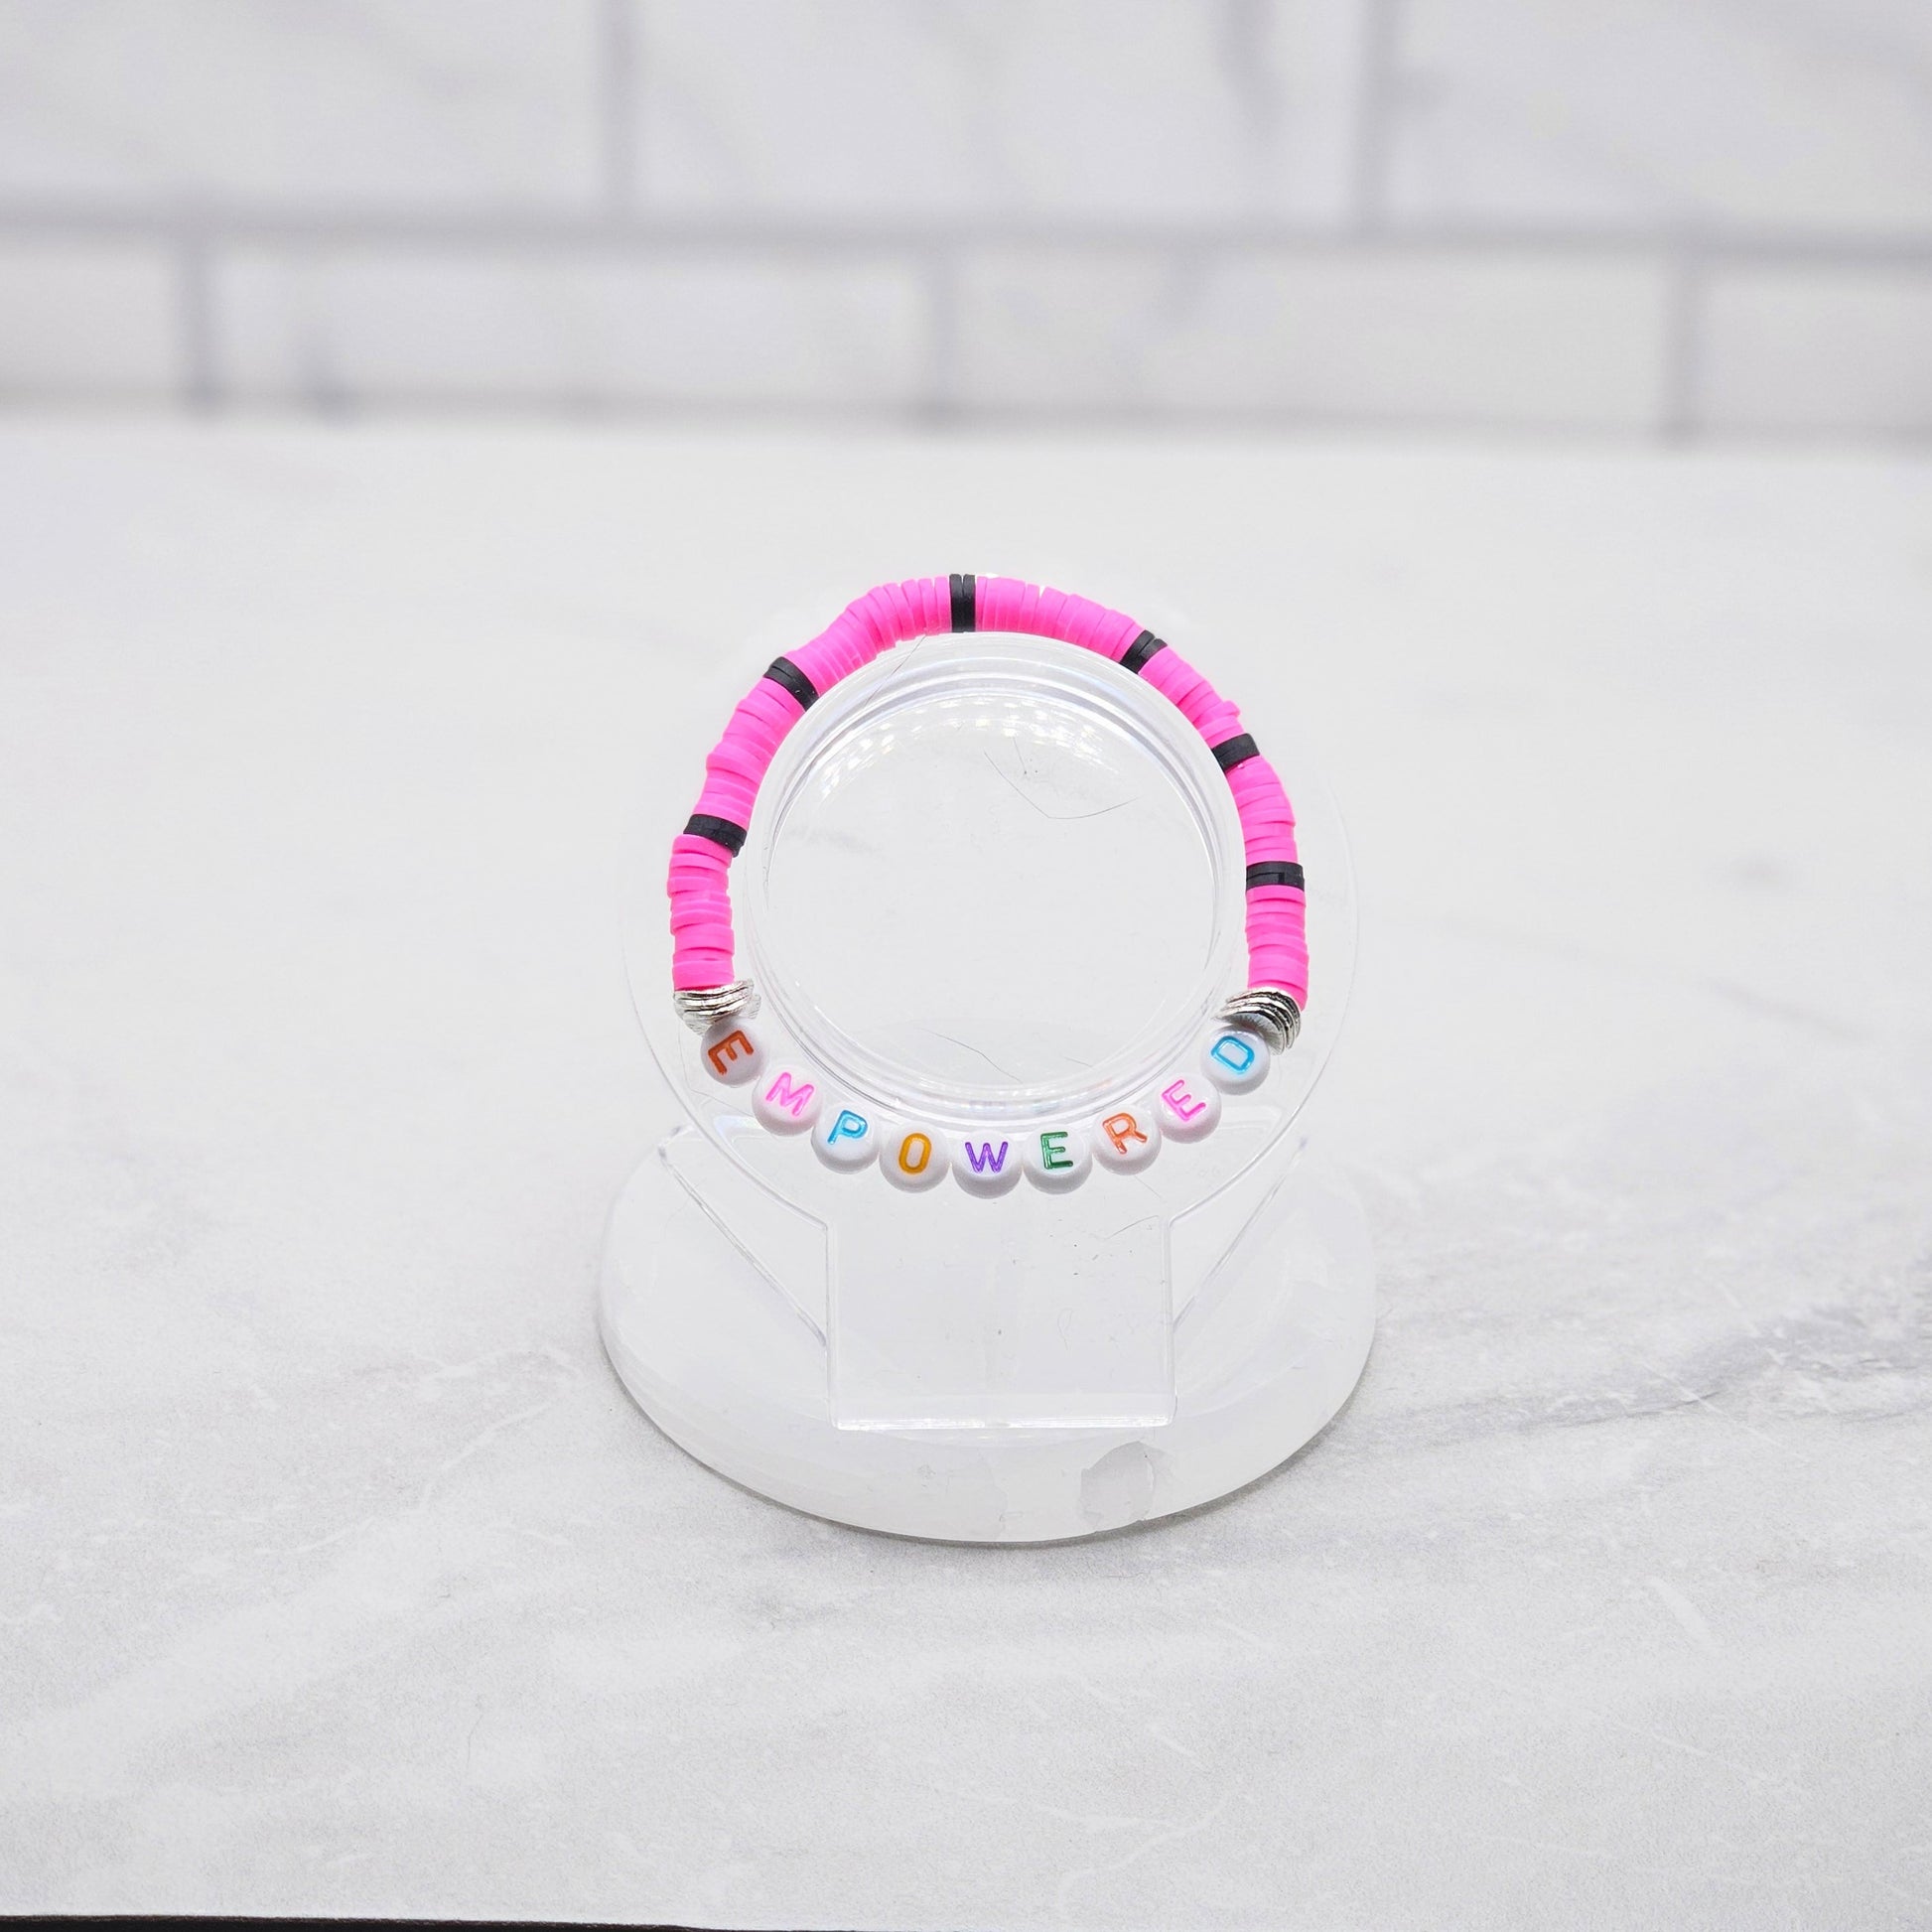 empowered affirmation bracelet - pink & black beaded word bracelet - braceliss